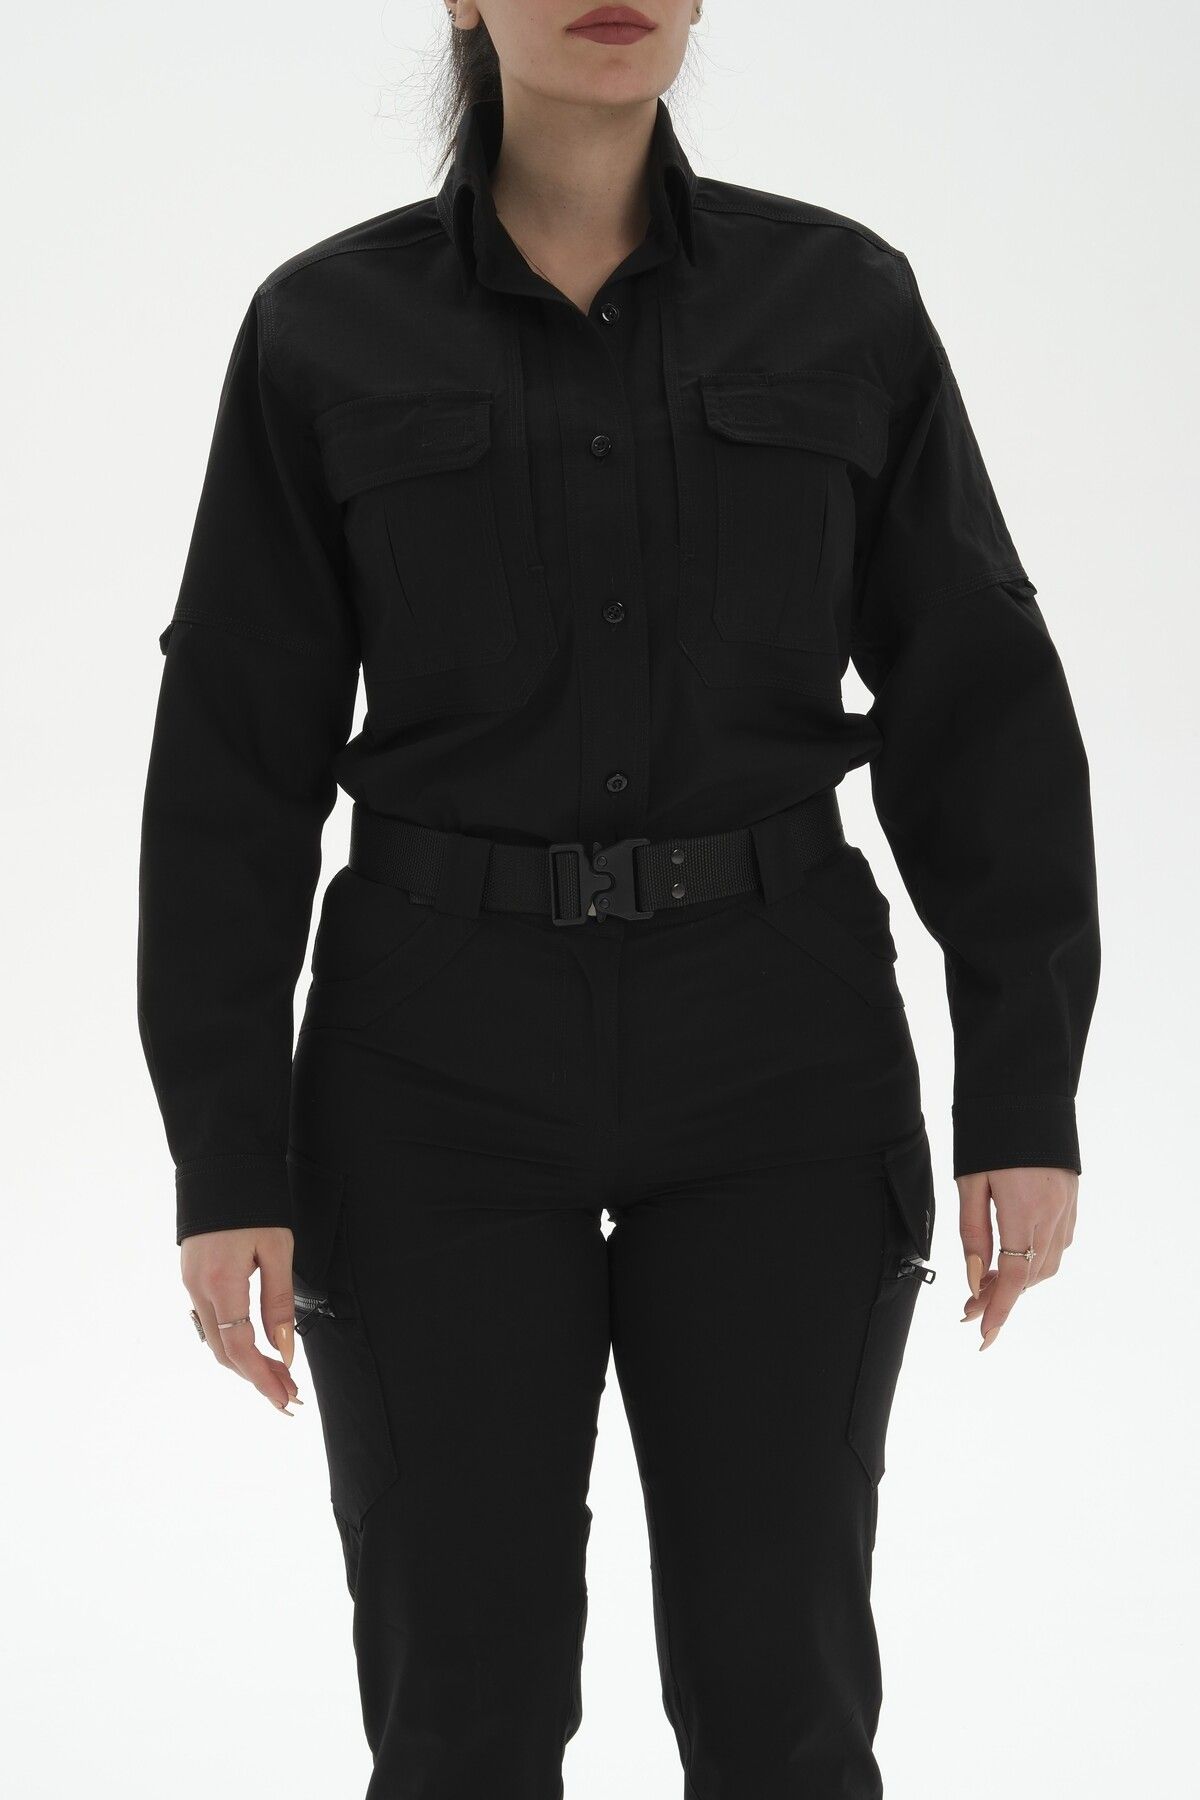 SOUTH COL Force Kadın Tactical Ripstop Taktik Gömlek Sırtı Fileli Yüksek Dayanıklılığa Sahip Likralı Kumaş